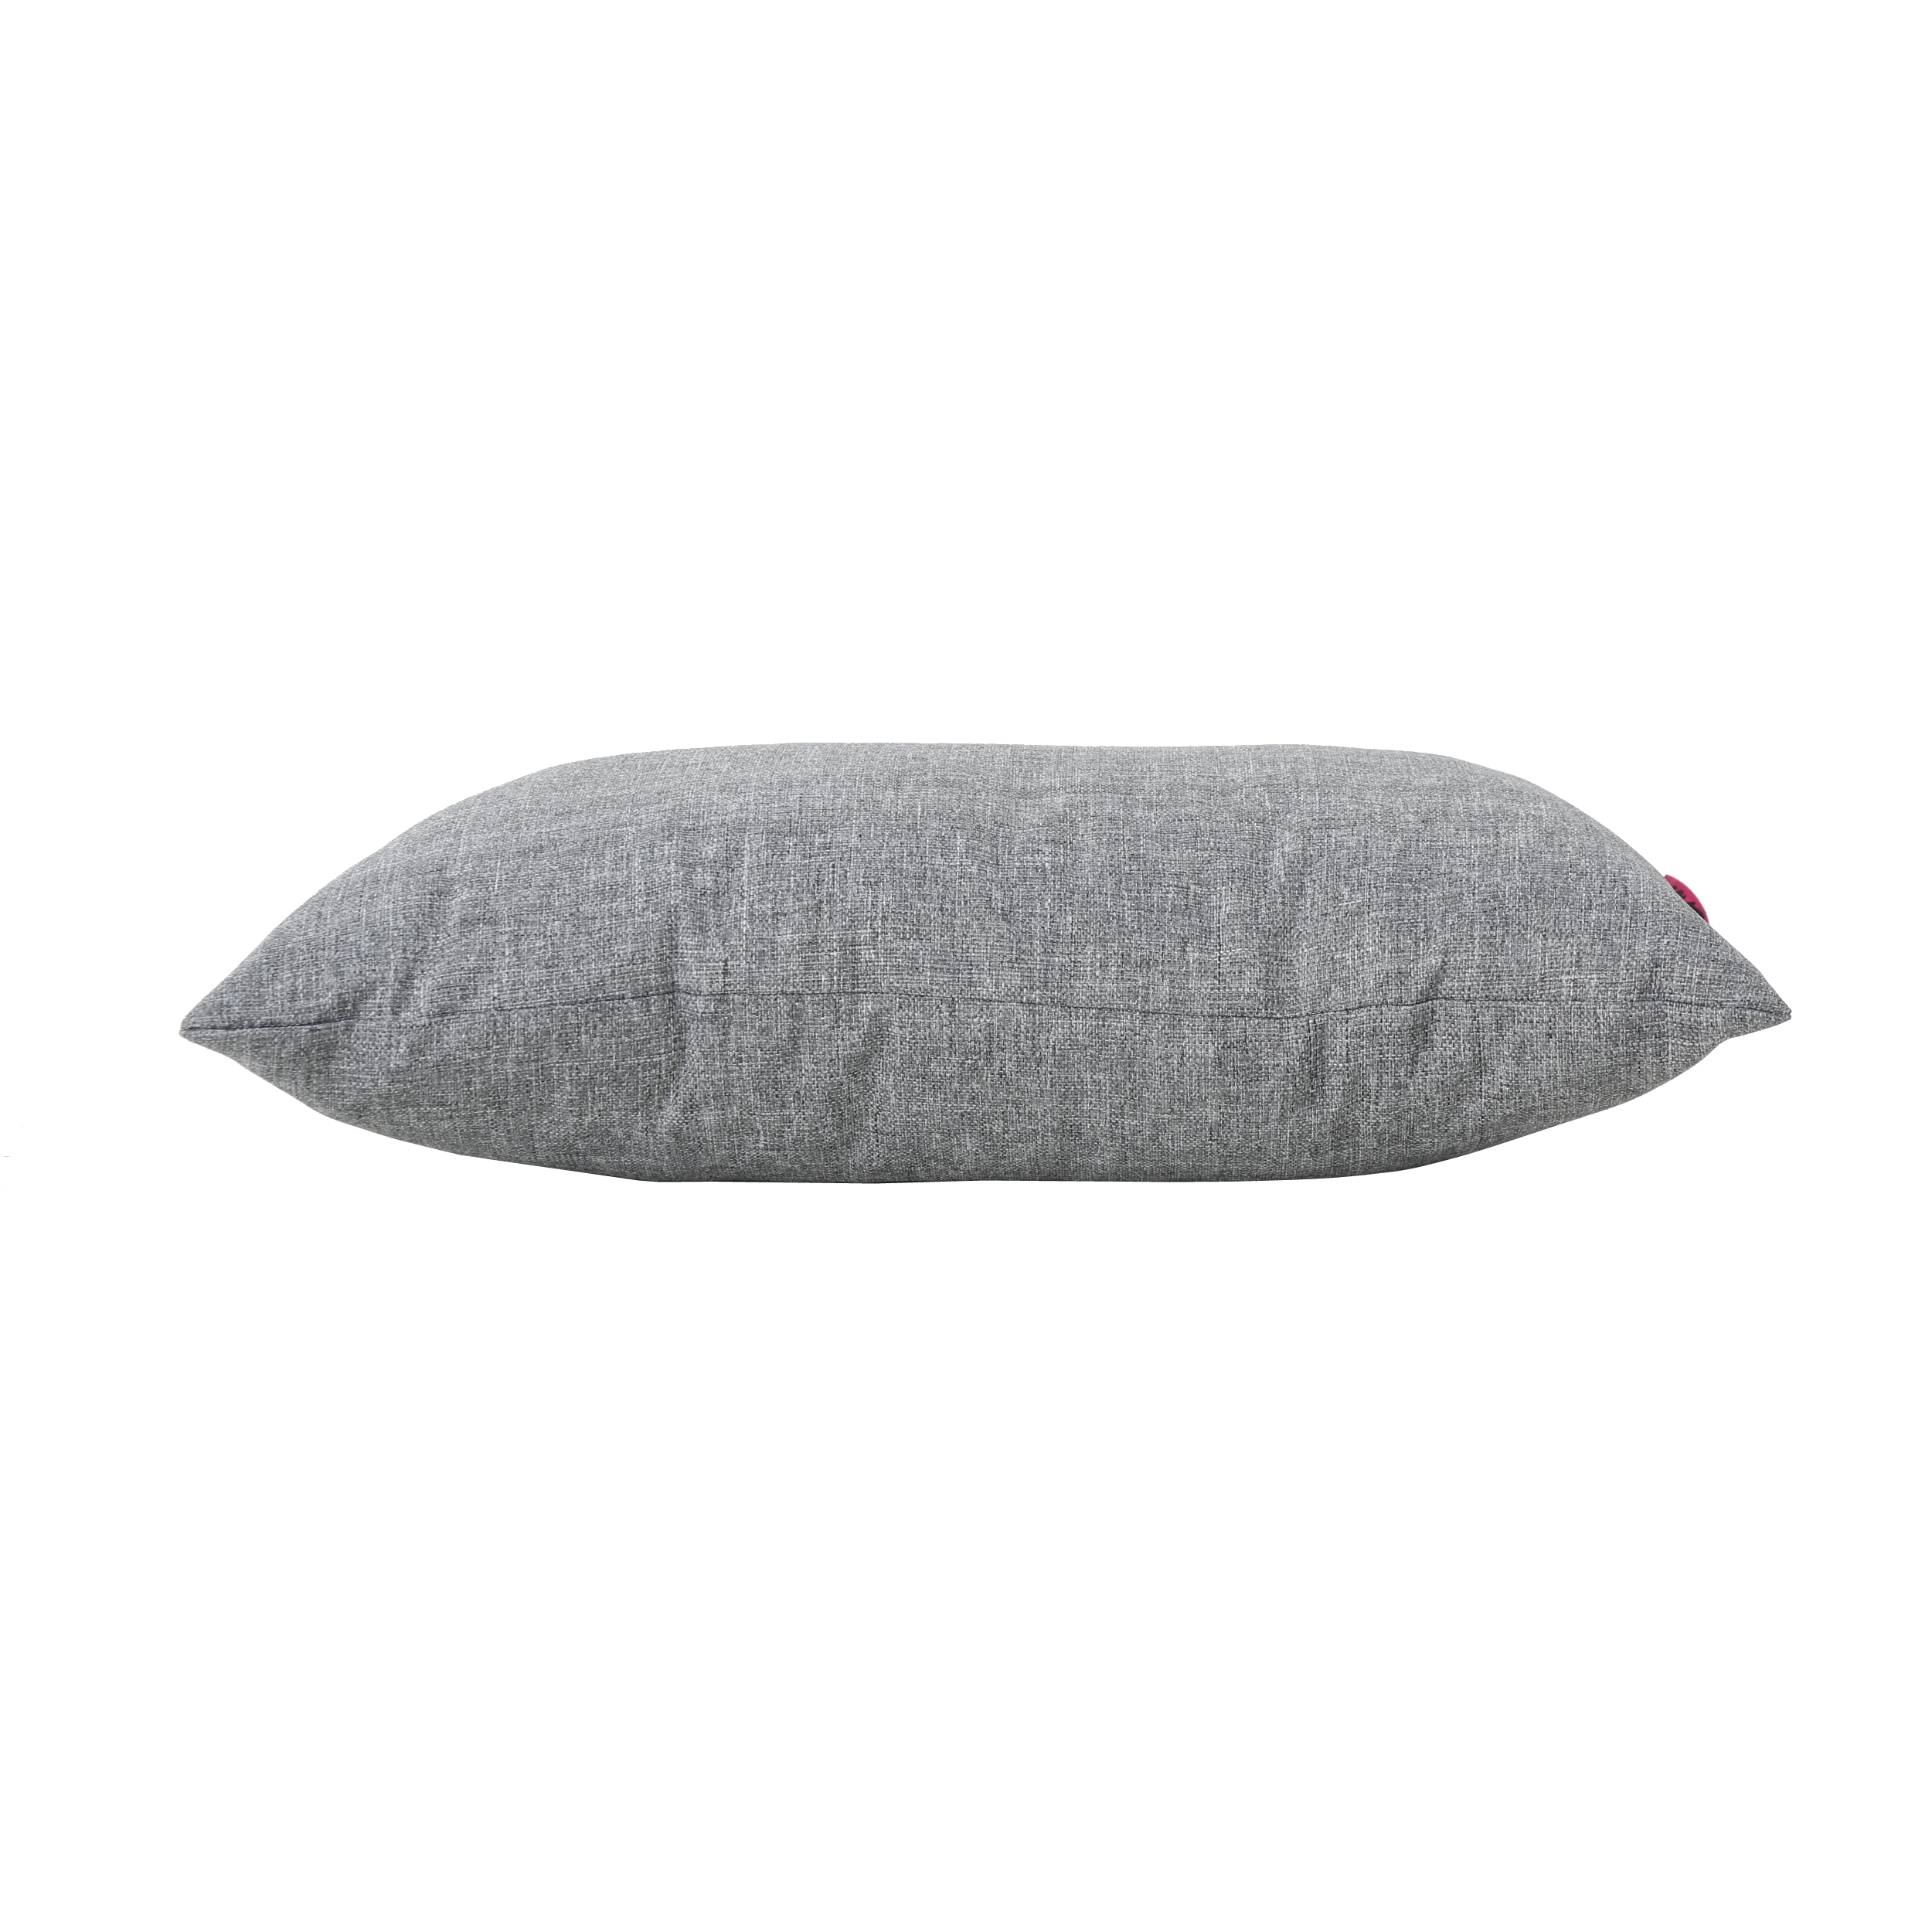 Noble House Coronado 18.5x11.5" Outdoor Fabric Throw Pillow in Gray - image 6 of 11